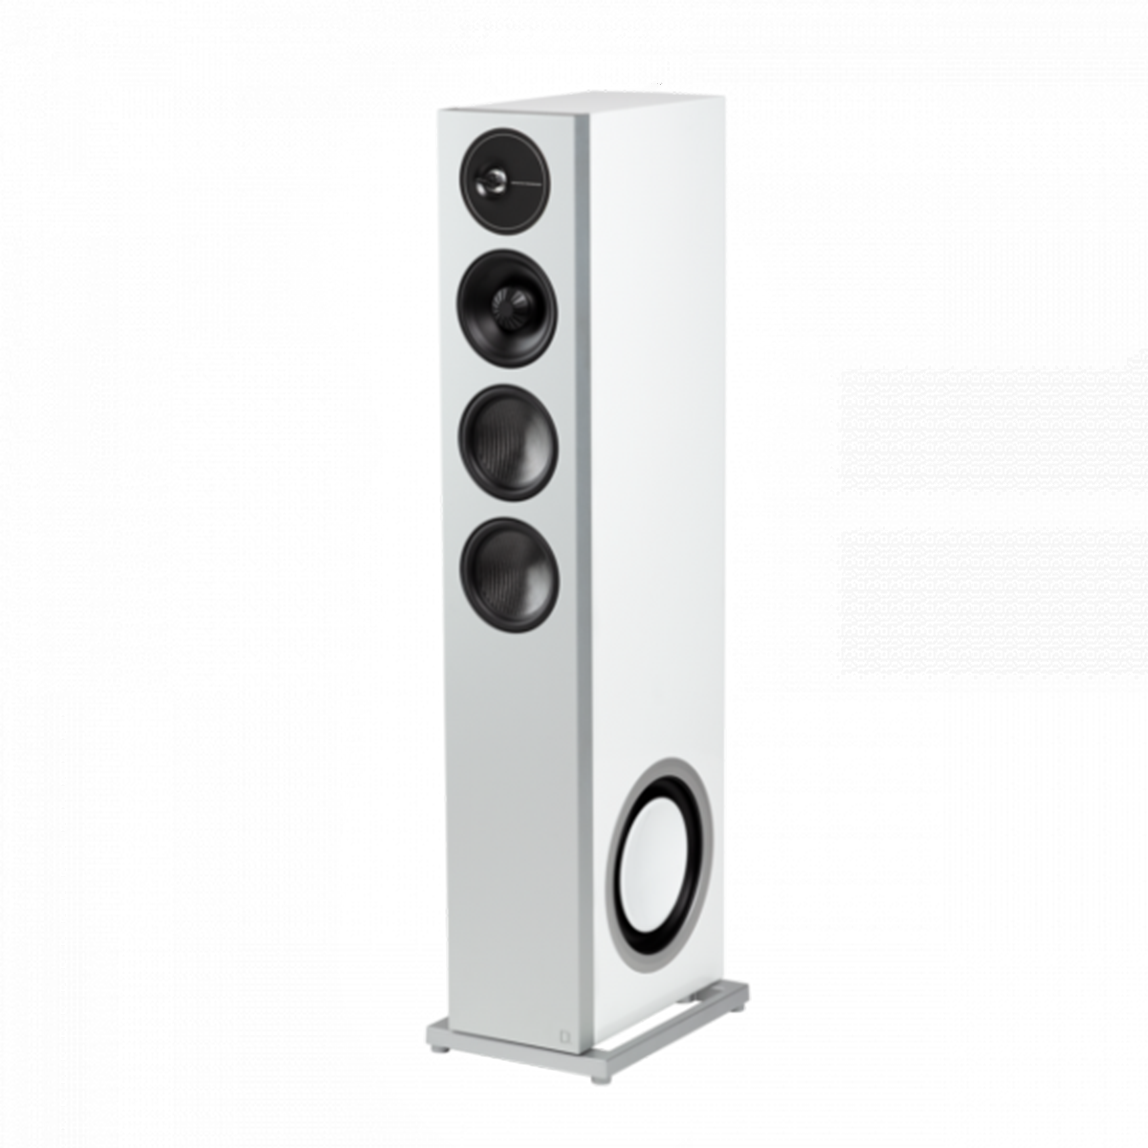 Definitive Technology D15 Demand Series High-Performance Floor Standing Speaker (Pair)